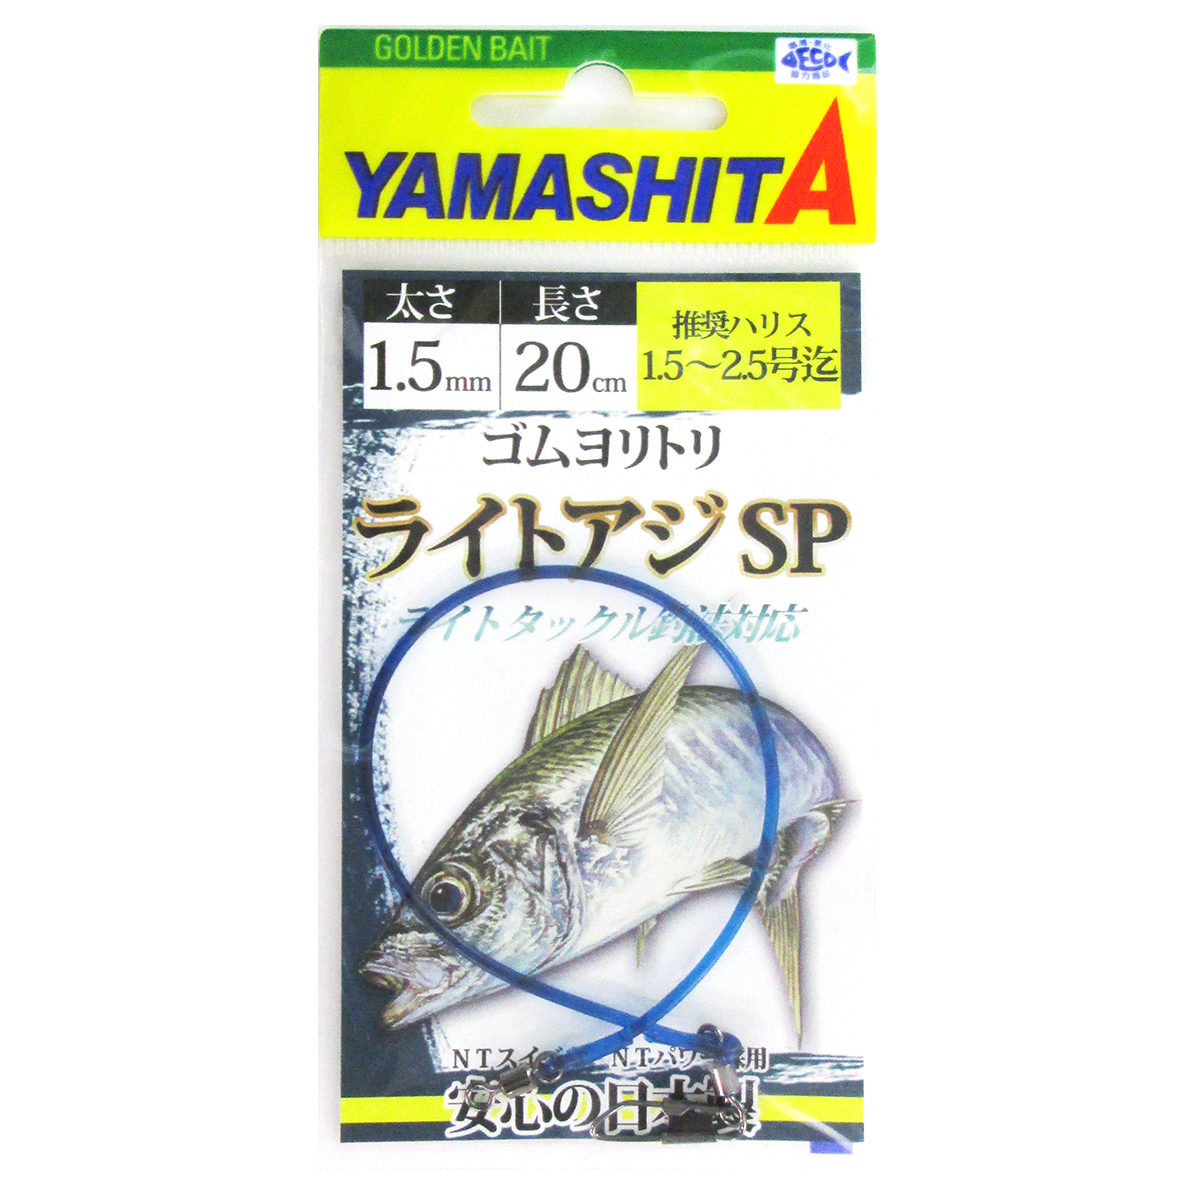 ヤマリア 【正規品直輸入】 ヤマシタ ゴムヨリトリ ライトアジSP 市場 20cm 1.5mm